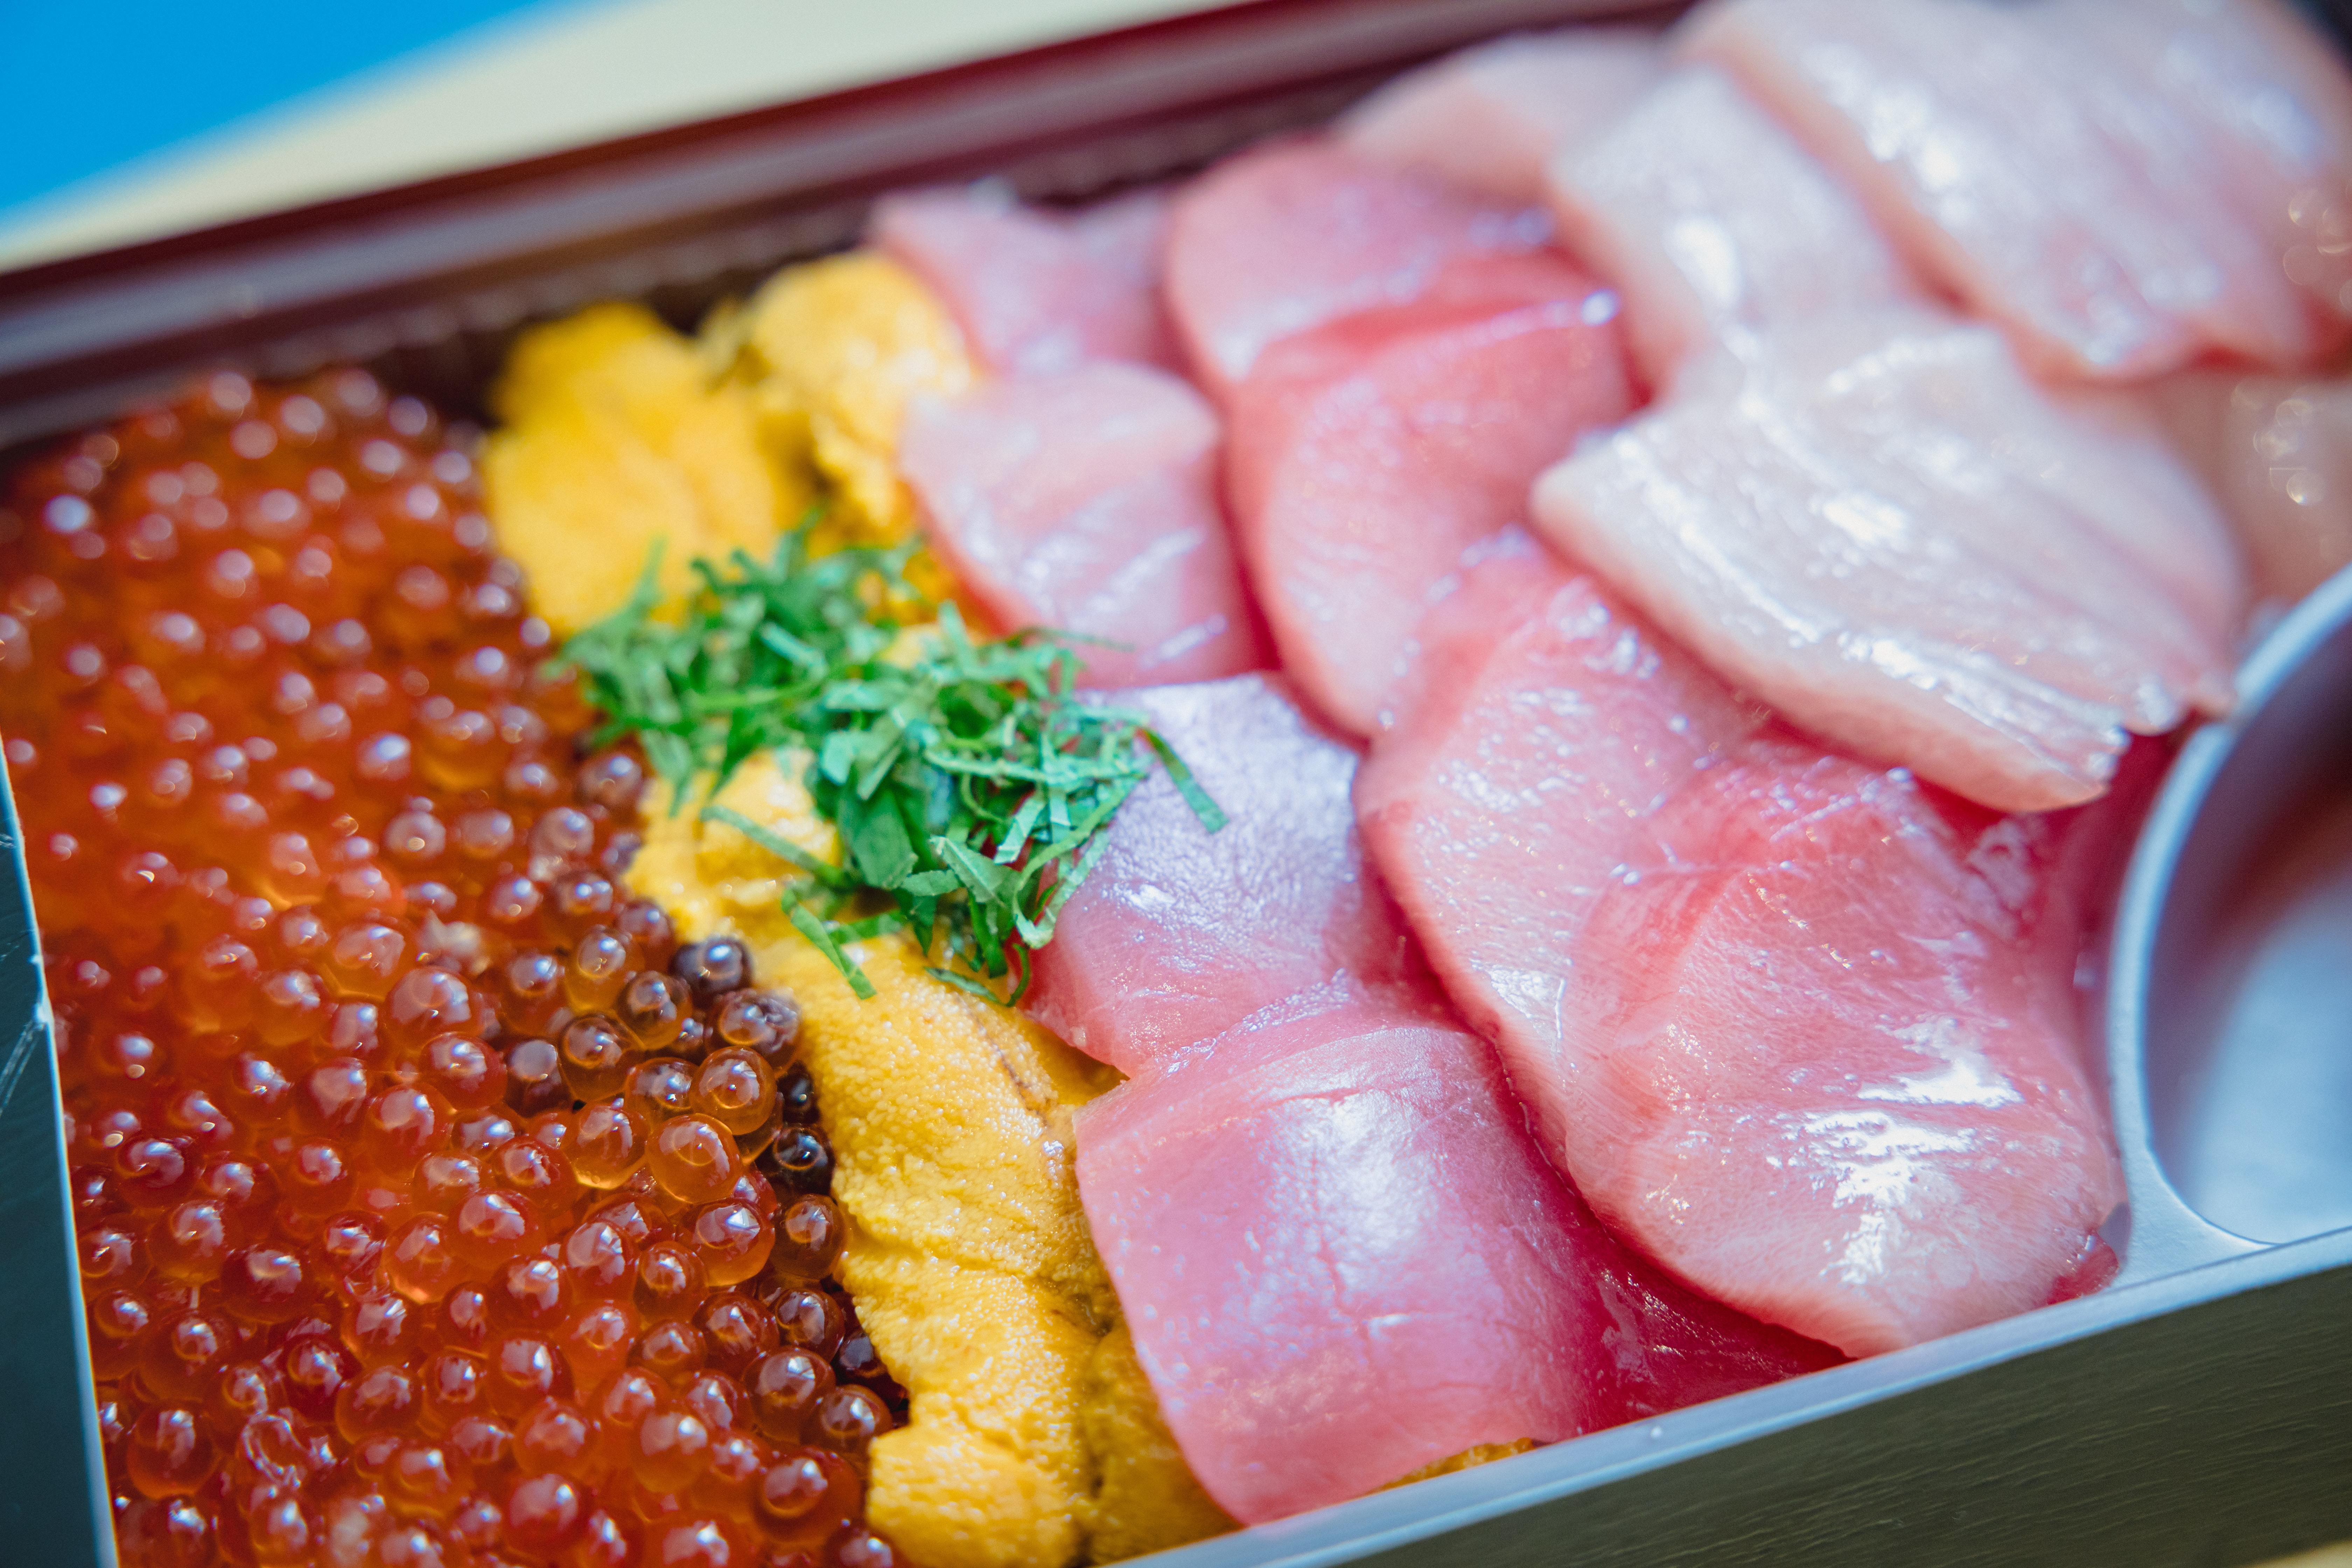 Un plato de huevos de pescado y rebanadas de pescado crudo - una delicia para el amante del sushi.